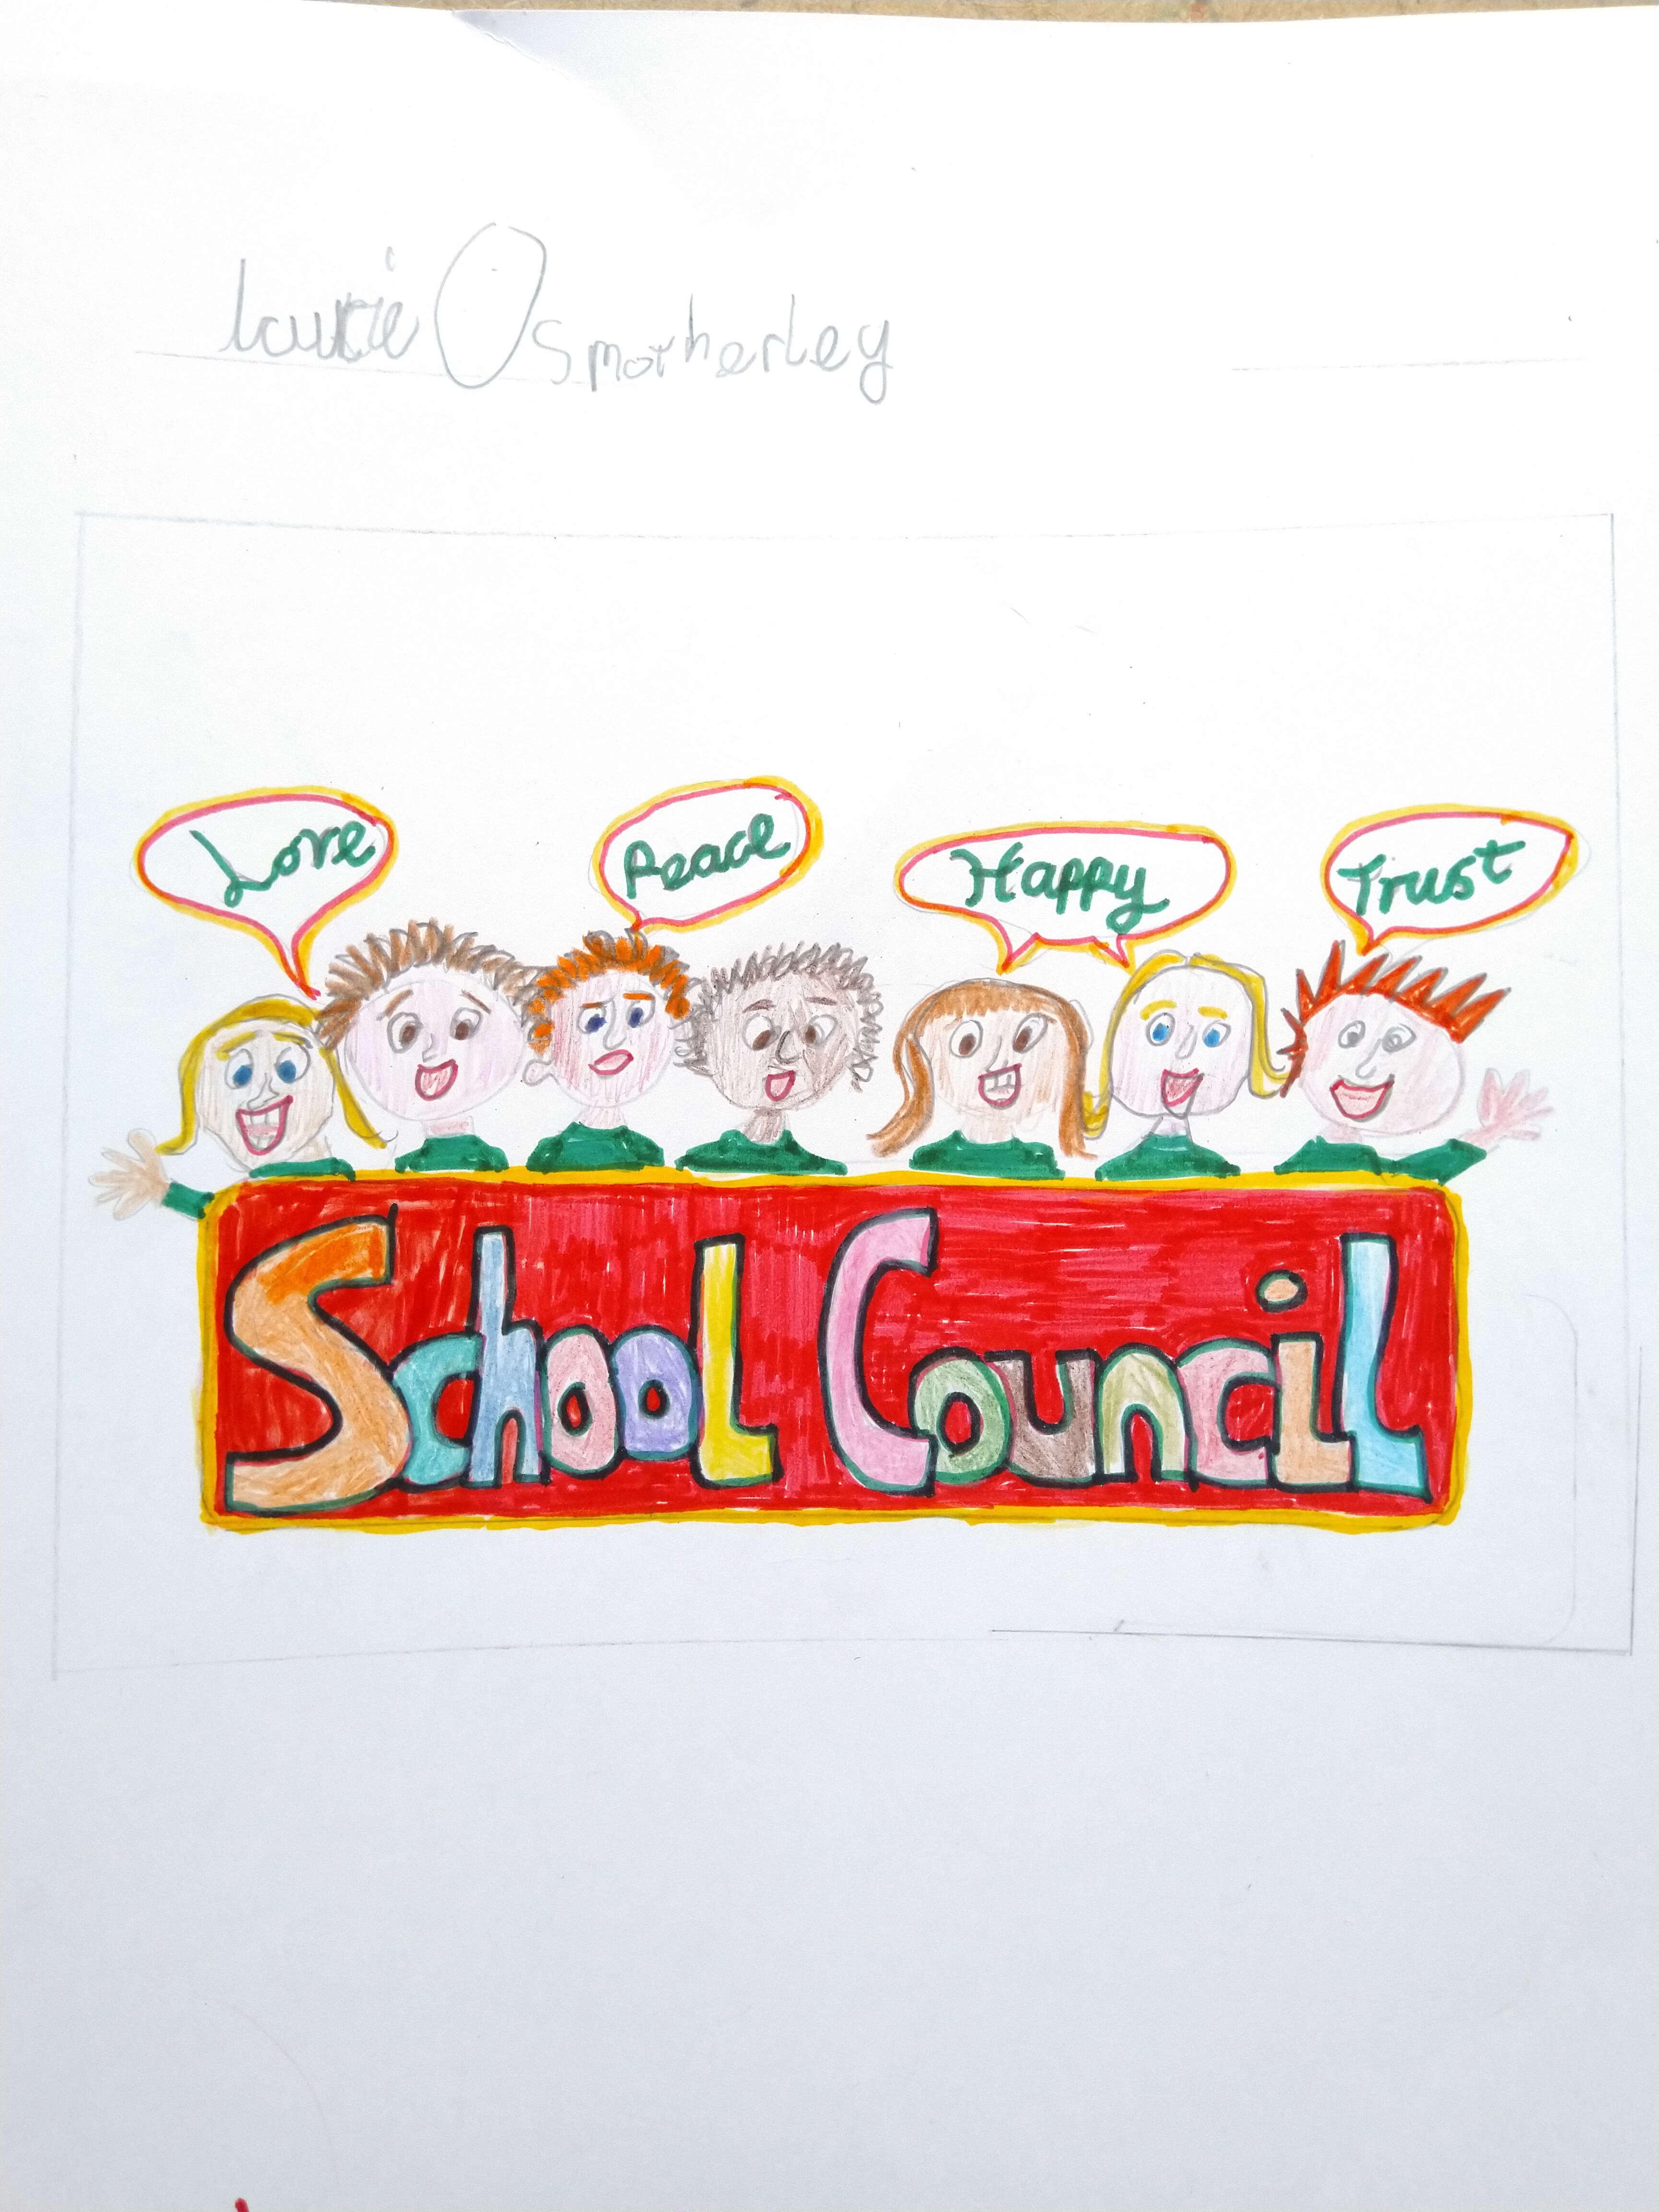 ALO-School-Council-Logo